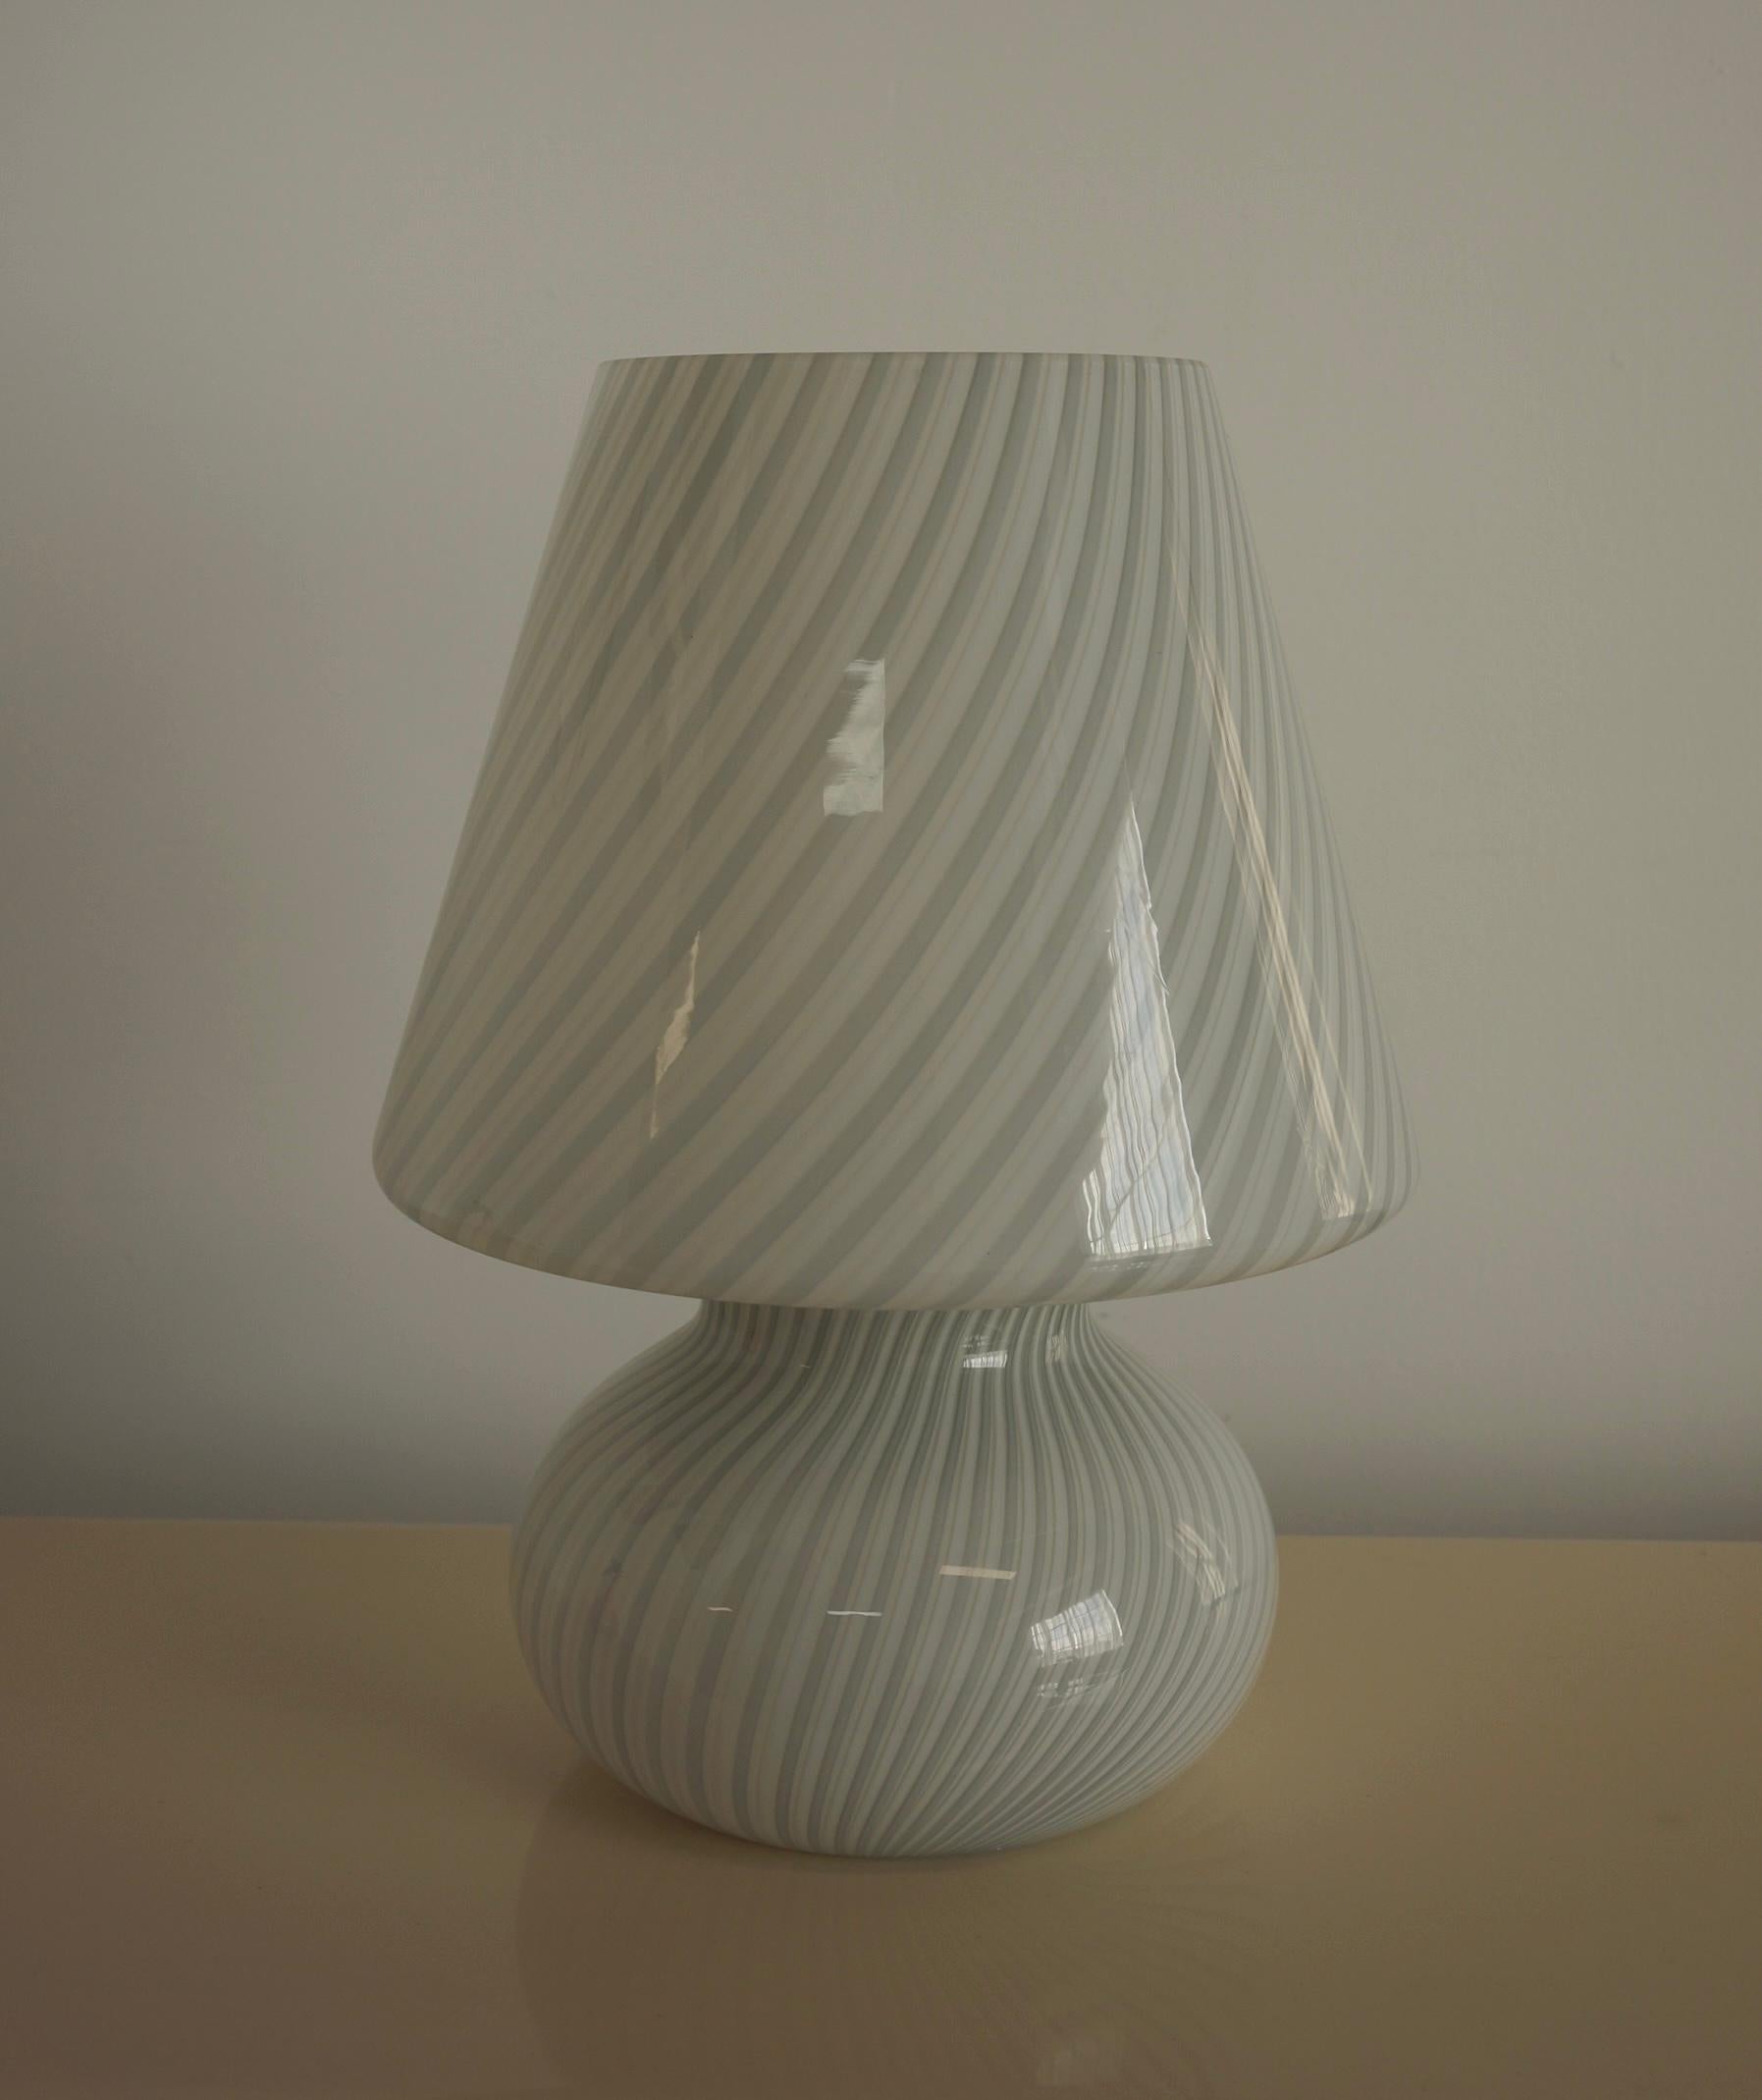 Lampe à champignon de Murano de très grande taille, réalisée selon la technique du tourbillon. Le tourbillon présente 2 couleurs de verre en gris et en blanc, joliment enroulées autour du verre blanc de base. Le verre d'art de Murano est considéré